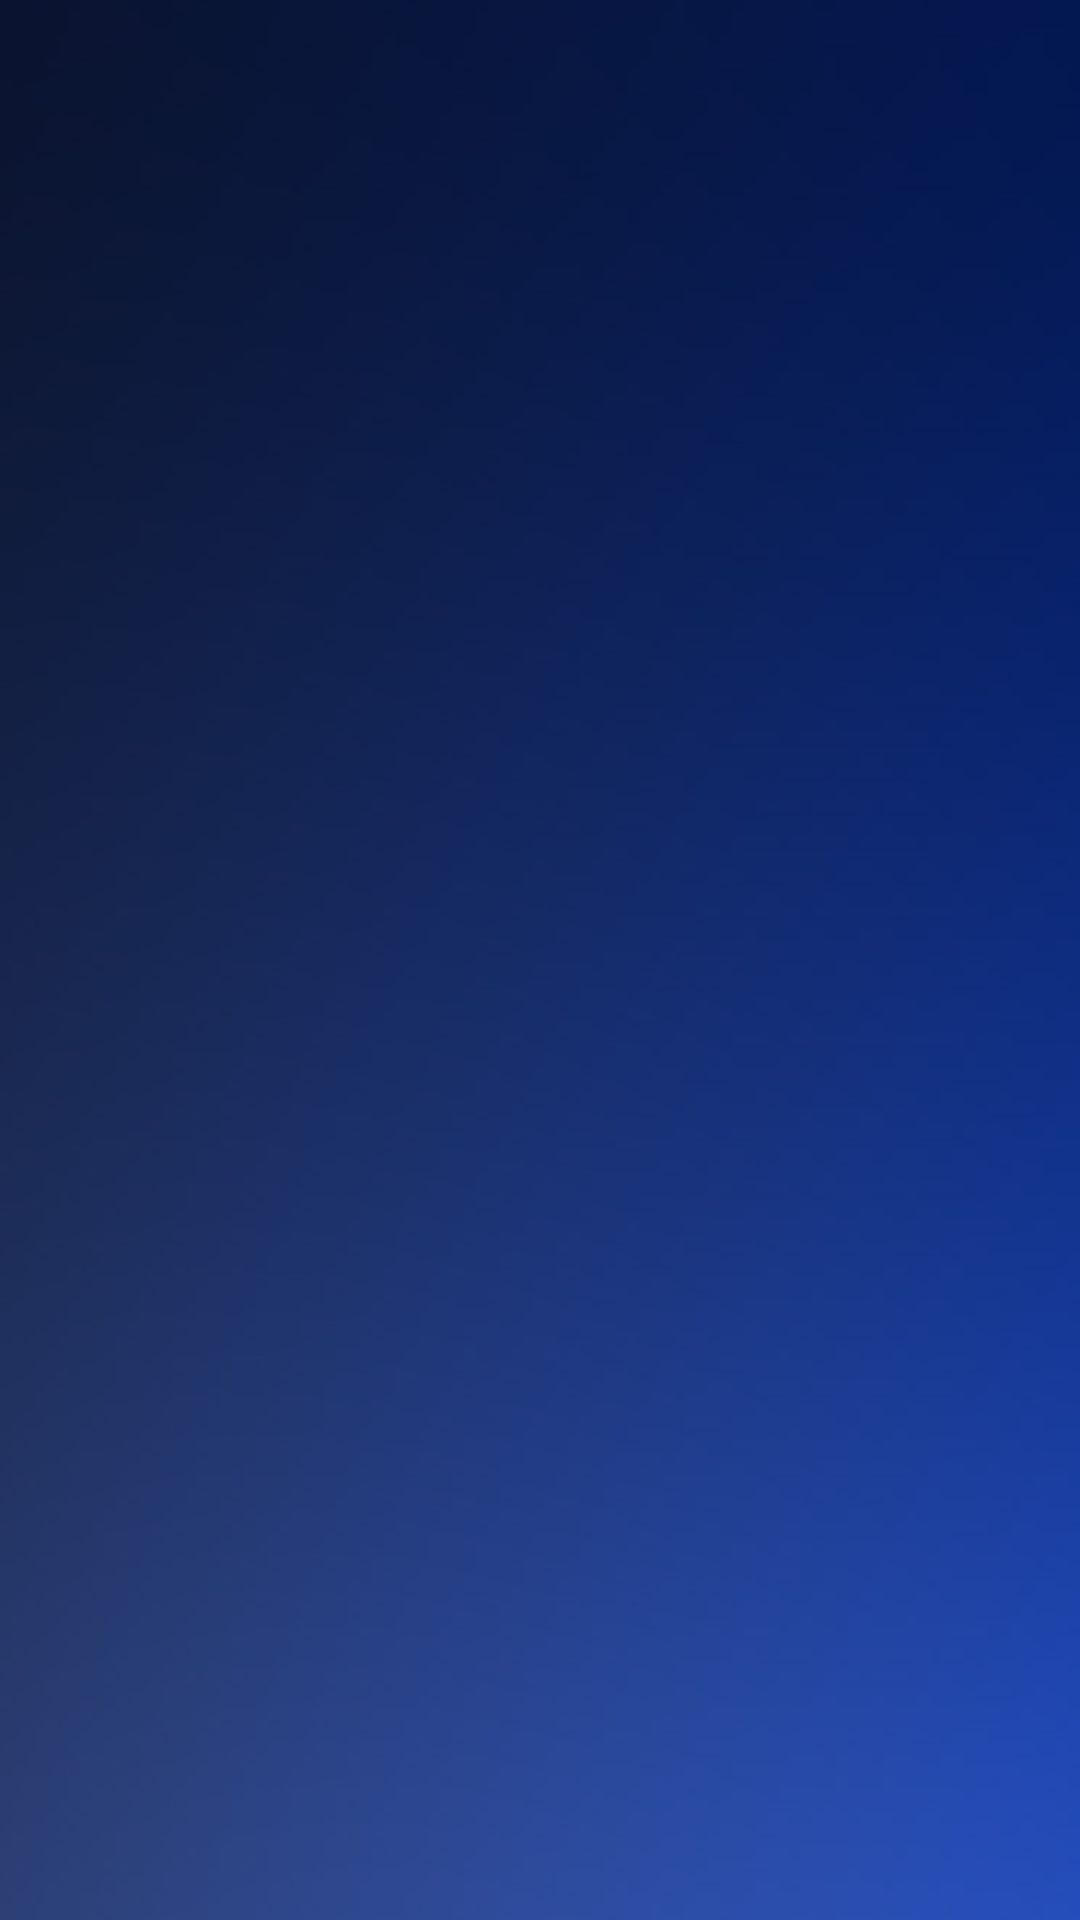 Pure Dark Blue Ocean Gradation Blur Background iPhone Wallpaper